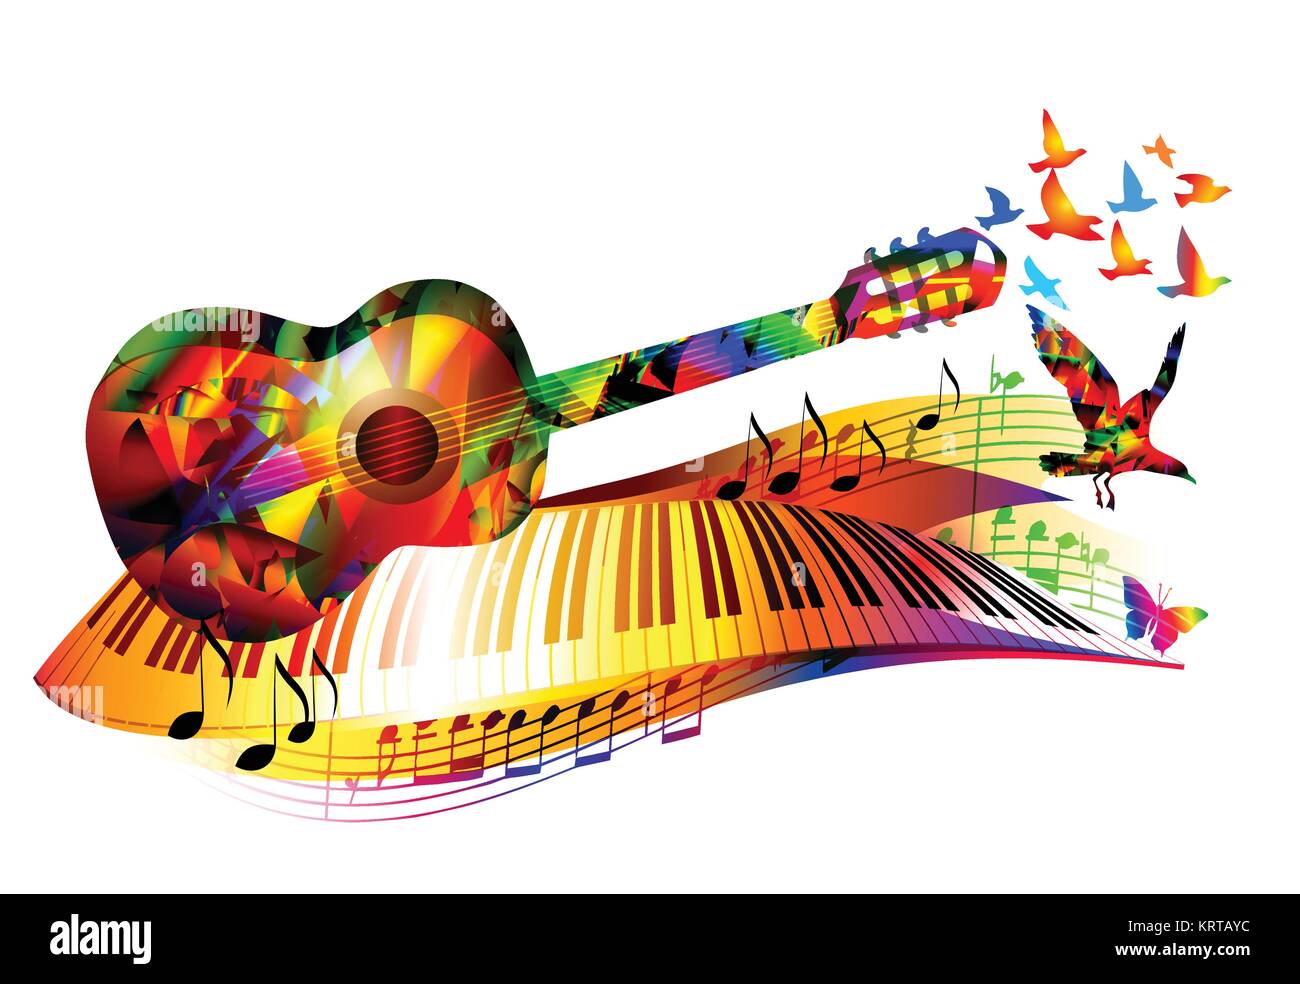 Arrière-plan de la musique colorée avec guitare, clavier de piano, les notes de musique et les oiseaux en plein vol Illustration de Vecteur